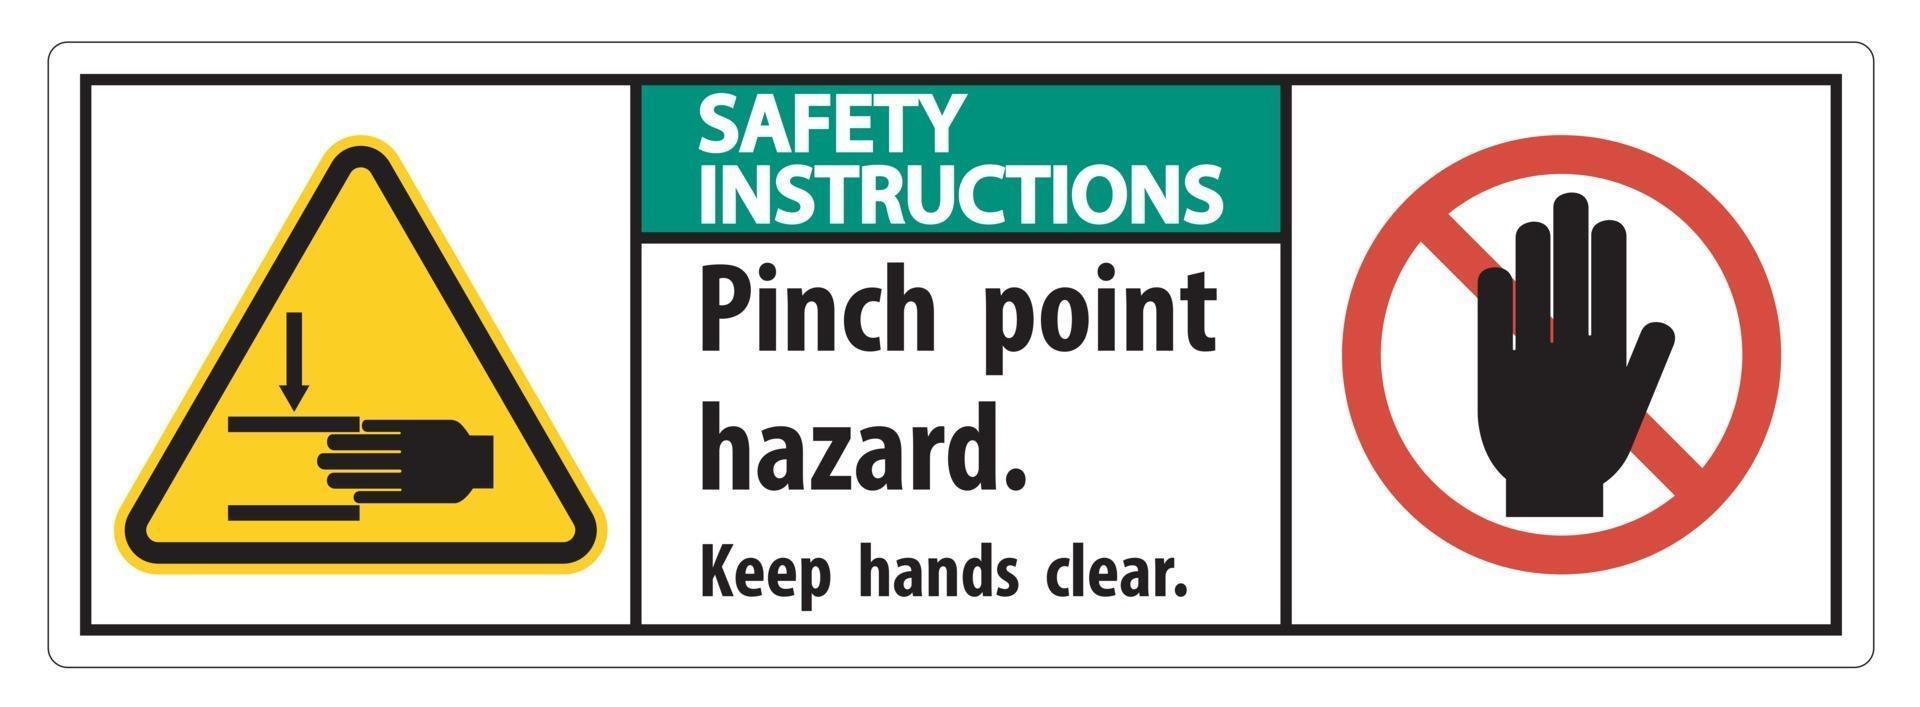 instruções de segurança perigo de ponto de esmagamento, mantenha as mãos livres vetor